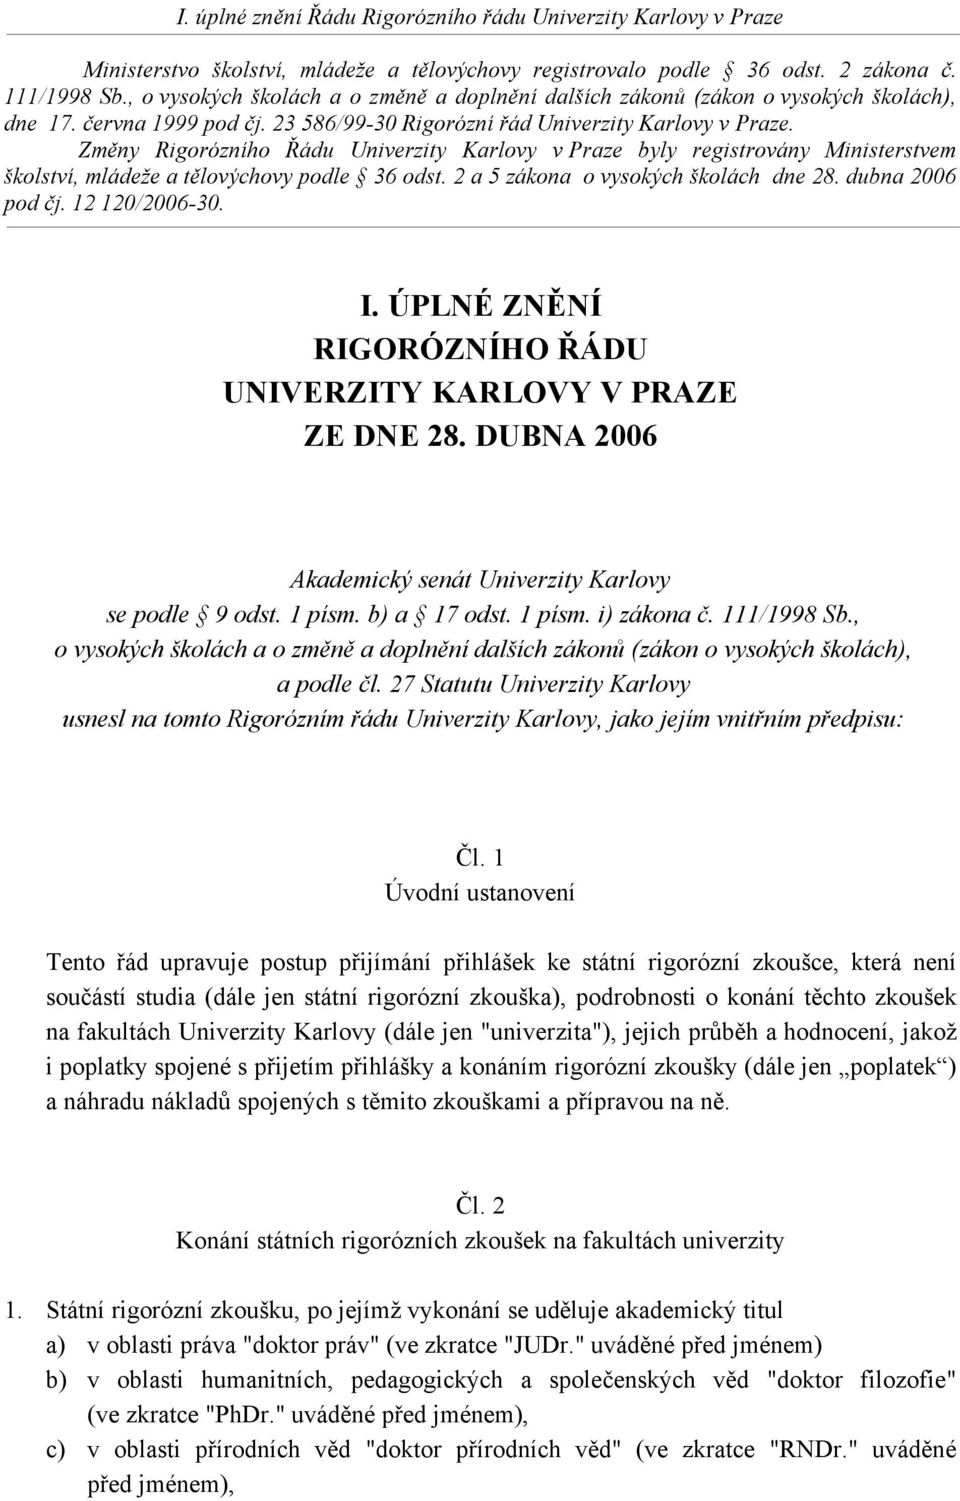 Změny Rigorózního Řádu Univerzity Karlovy v Praze byly registrovány Ministerstvem školství, mládeže a tělovýchovy podle 36 odst. 2 a 5 zákona o vysokých školách dne 28. dubna 2006 pod čj.